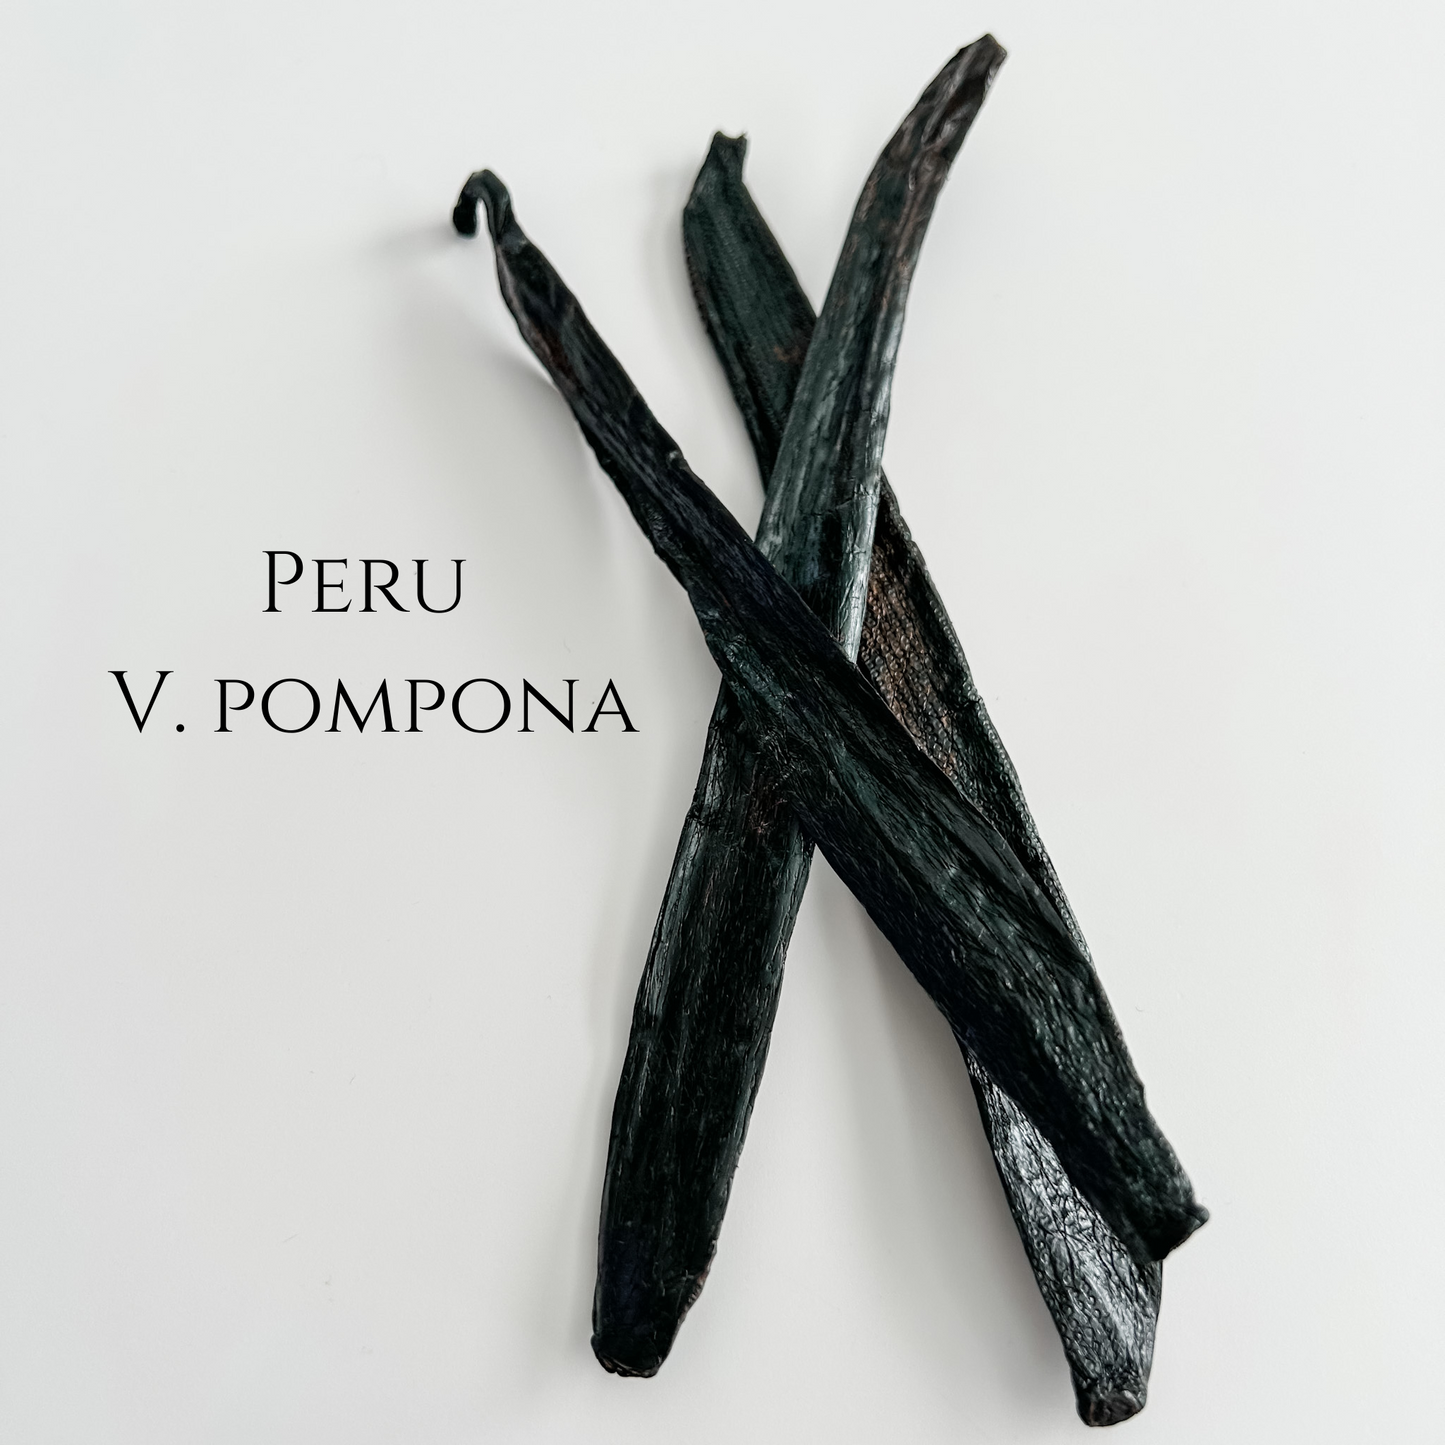 Peru V. pompona Vanilla Beans